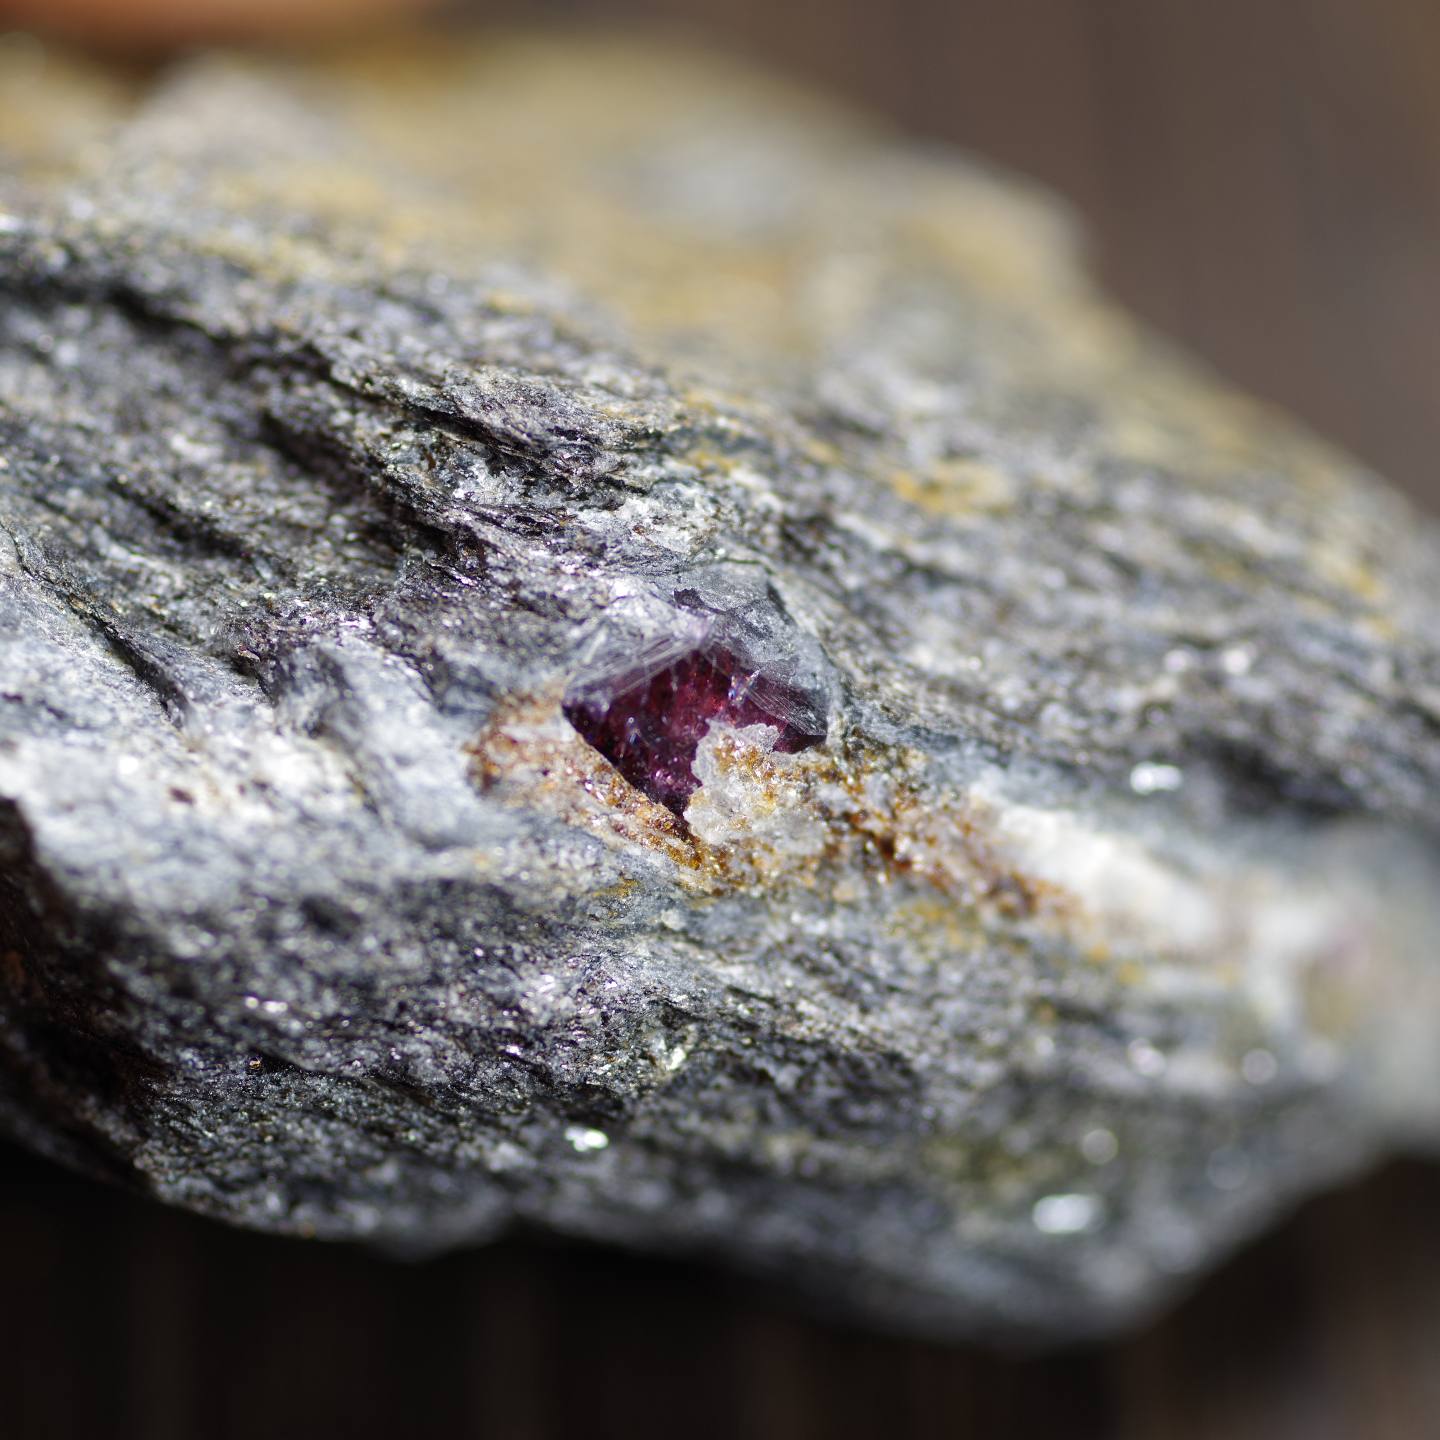 アルマンディンガーネット 母岩付き2 アメリカアラスカ産 Almandine Garnet  写真現物 動画あり